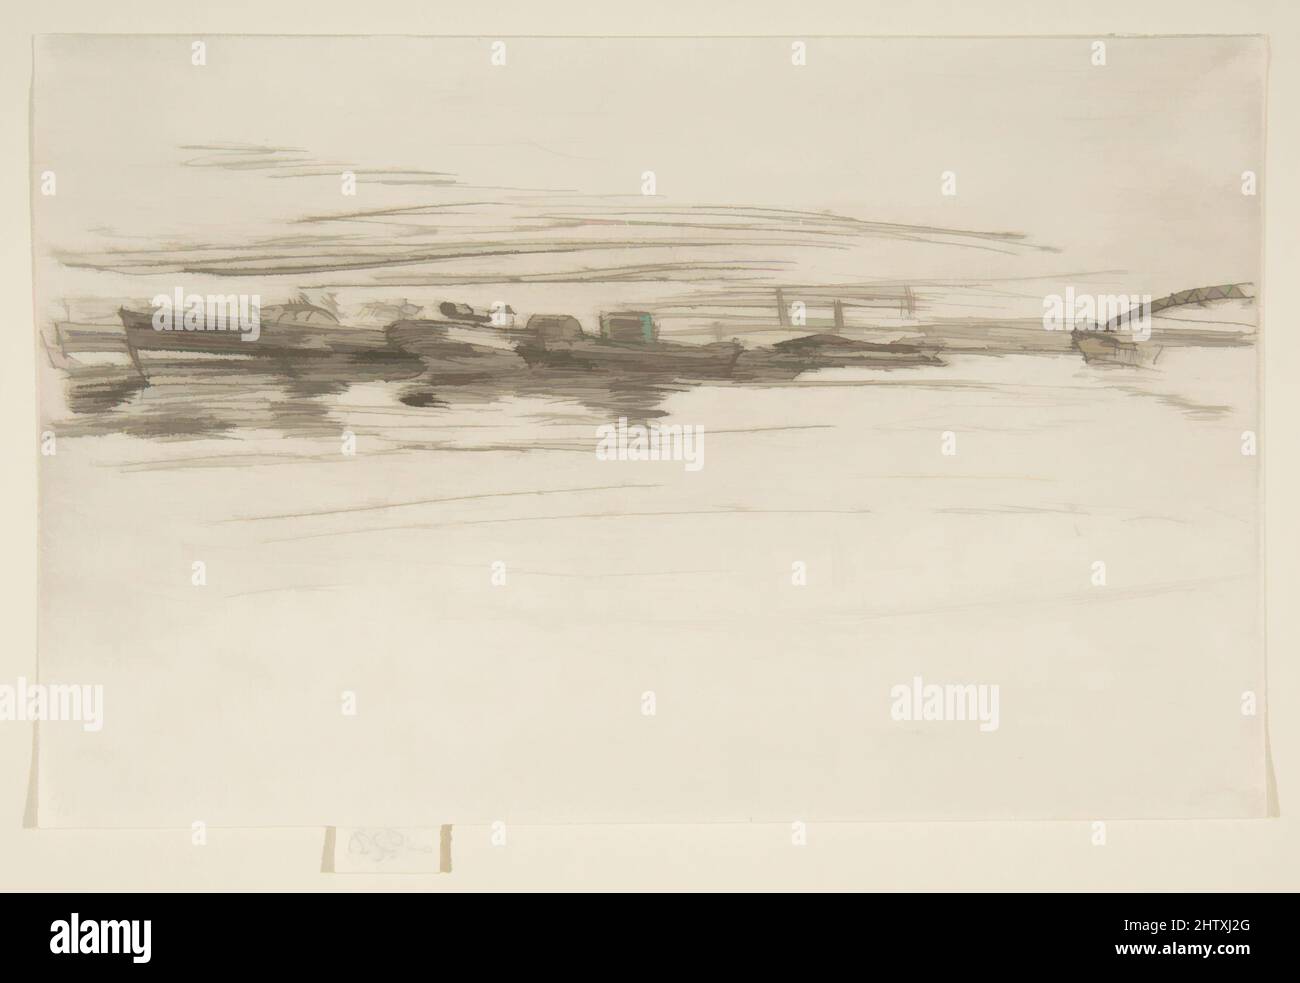 Art inspiré par Steamboat Fleet, 1875, Drypoint; premier état de deux (Glasgow); imprimé à l'encre noire sur papier ivoire posé, assiette: 5 5/16 × 8 3/8 po. (13,5 × 21,2 cm), Prints, James McNeill Whistler (American, Lowell, Massachusetts 1834–1903 London, Classic œuvres modernisées par Artotop avec une touche de modernité. Formes, couleur et valeur, impact visuel accrocheur sur l'art émotions par la liberté d'œuvres d'art d'une manière contemporaine. Un message intemporel qui cherche une nouvelle direction créative. Artistes qui se tournent vers le support numérique et créent le NFT Artotop Banque D'Images